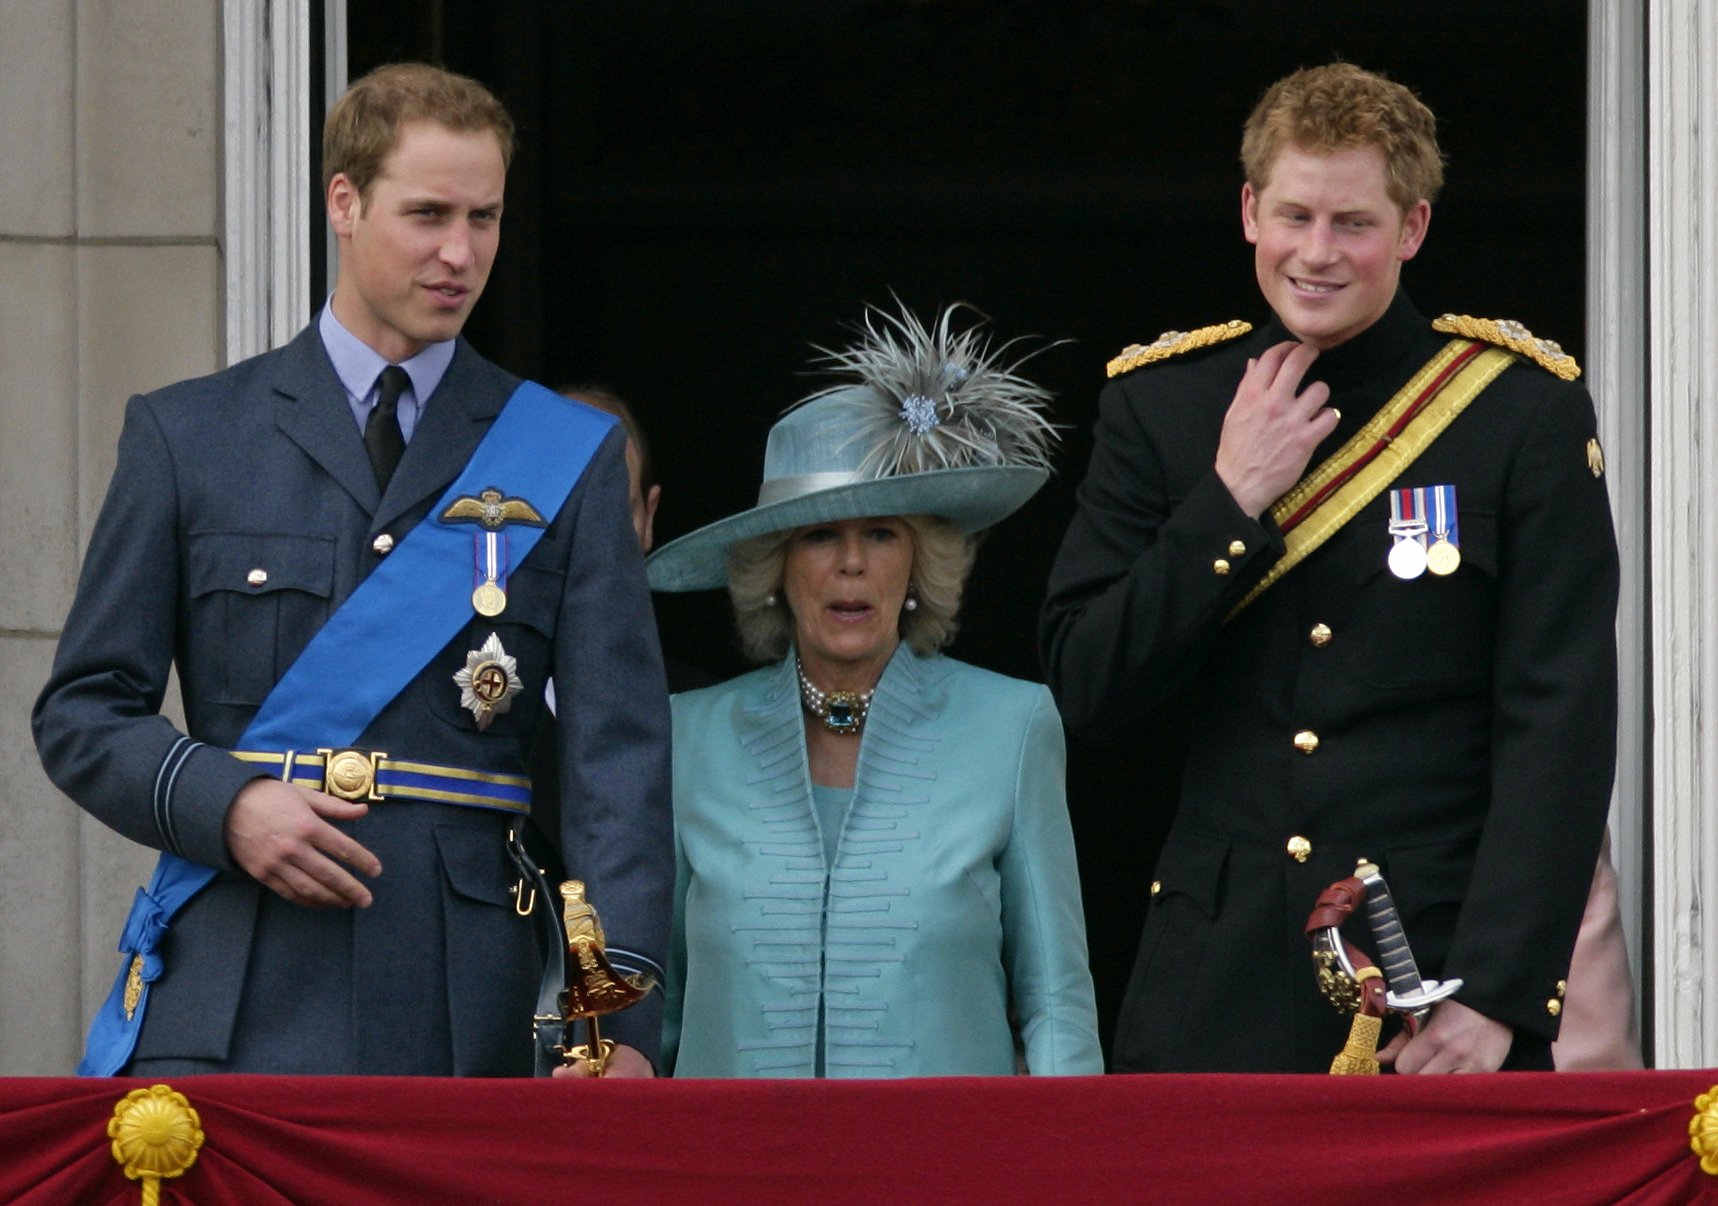 Le prince William, Camilla, duchesse de Cornouailles, et le prince Harry au balcon du palais de Buckingham lors de l'événement annuel du drapeau de la reine du premier bataillon des Grenadier Guards, le 13 juin 2009 à Londres, en Angleterre | Source : Getty Images